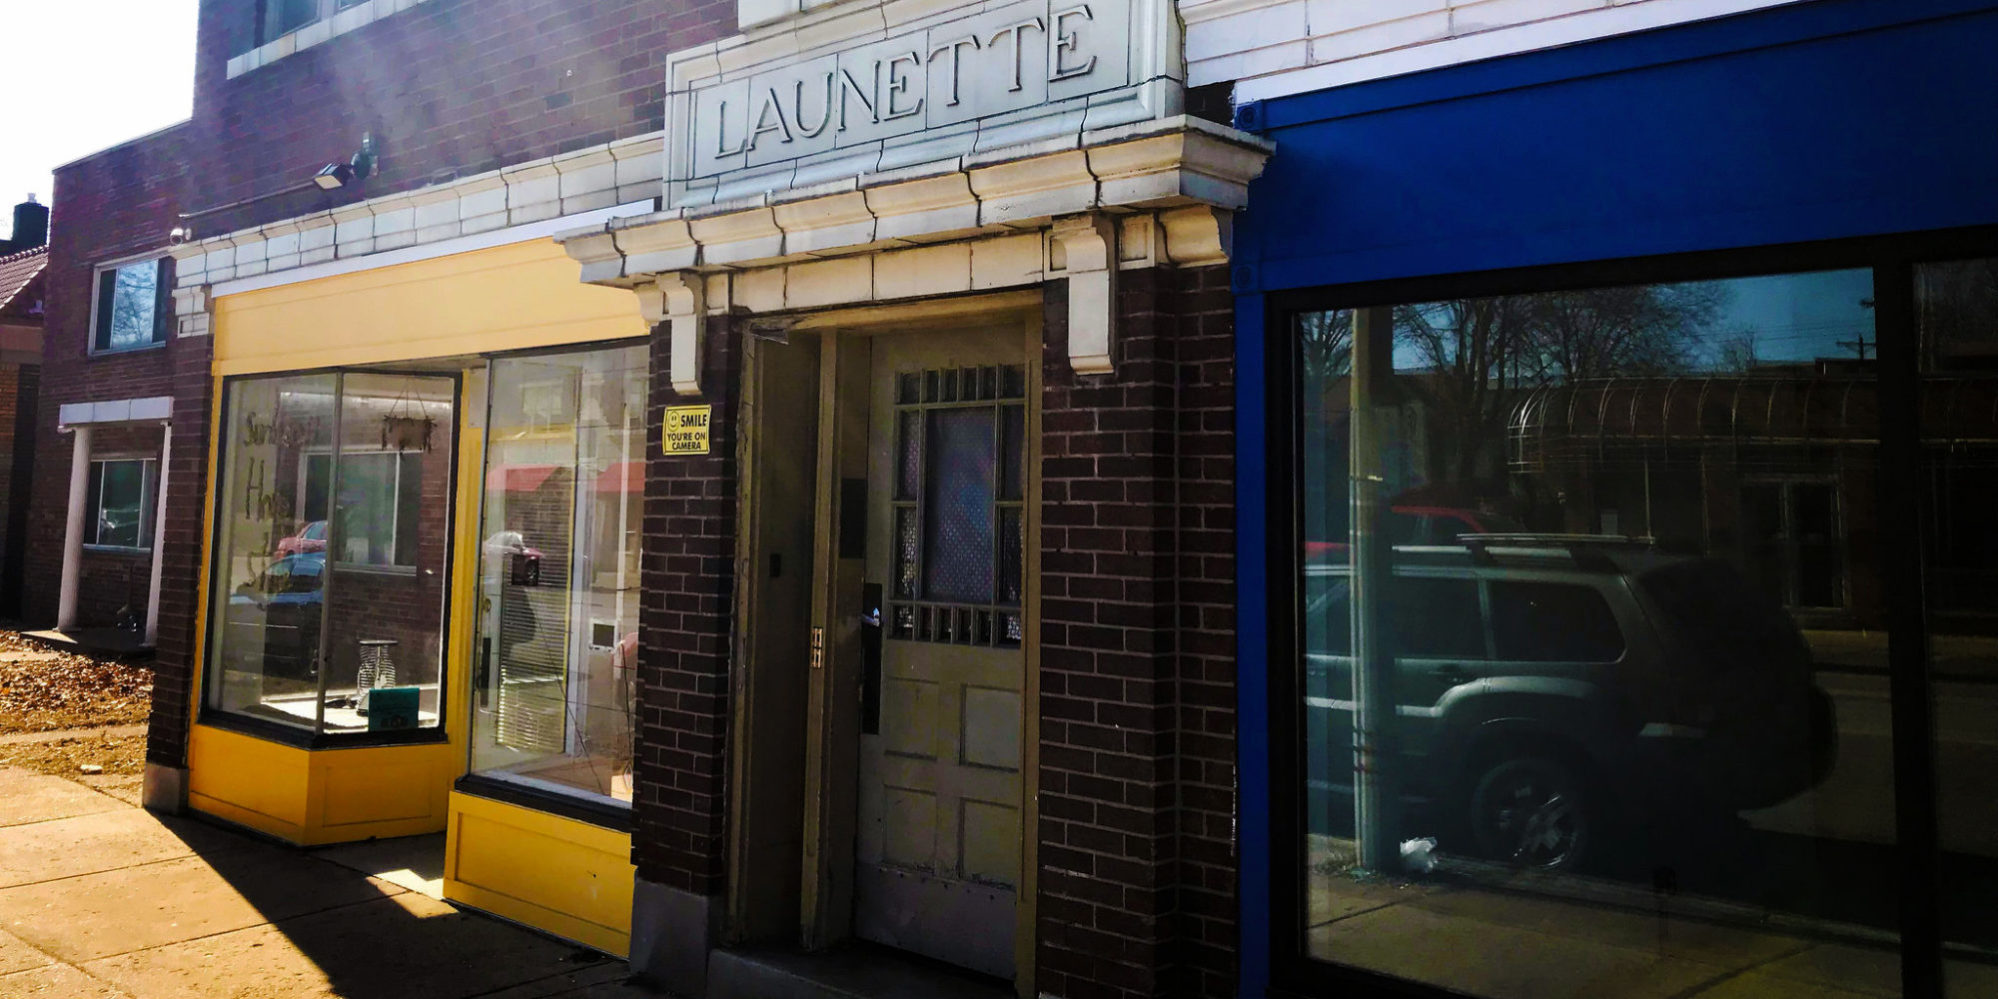 荷兰镇社区改善区南大道上的劳内特大楼的店面。